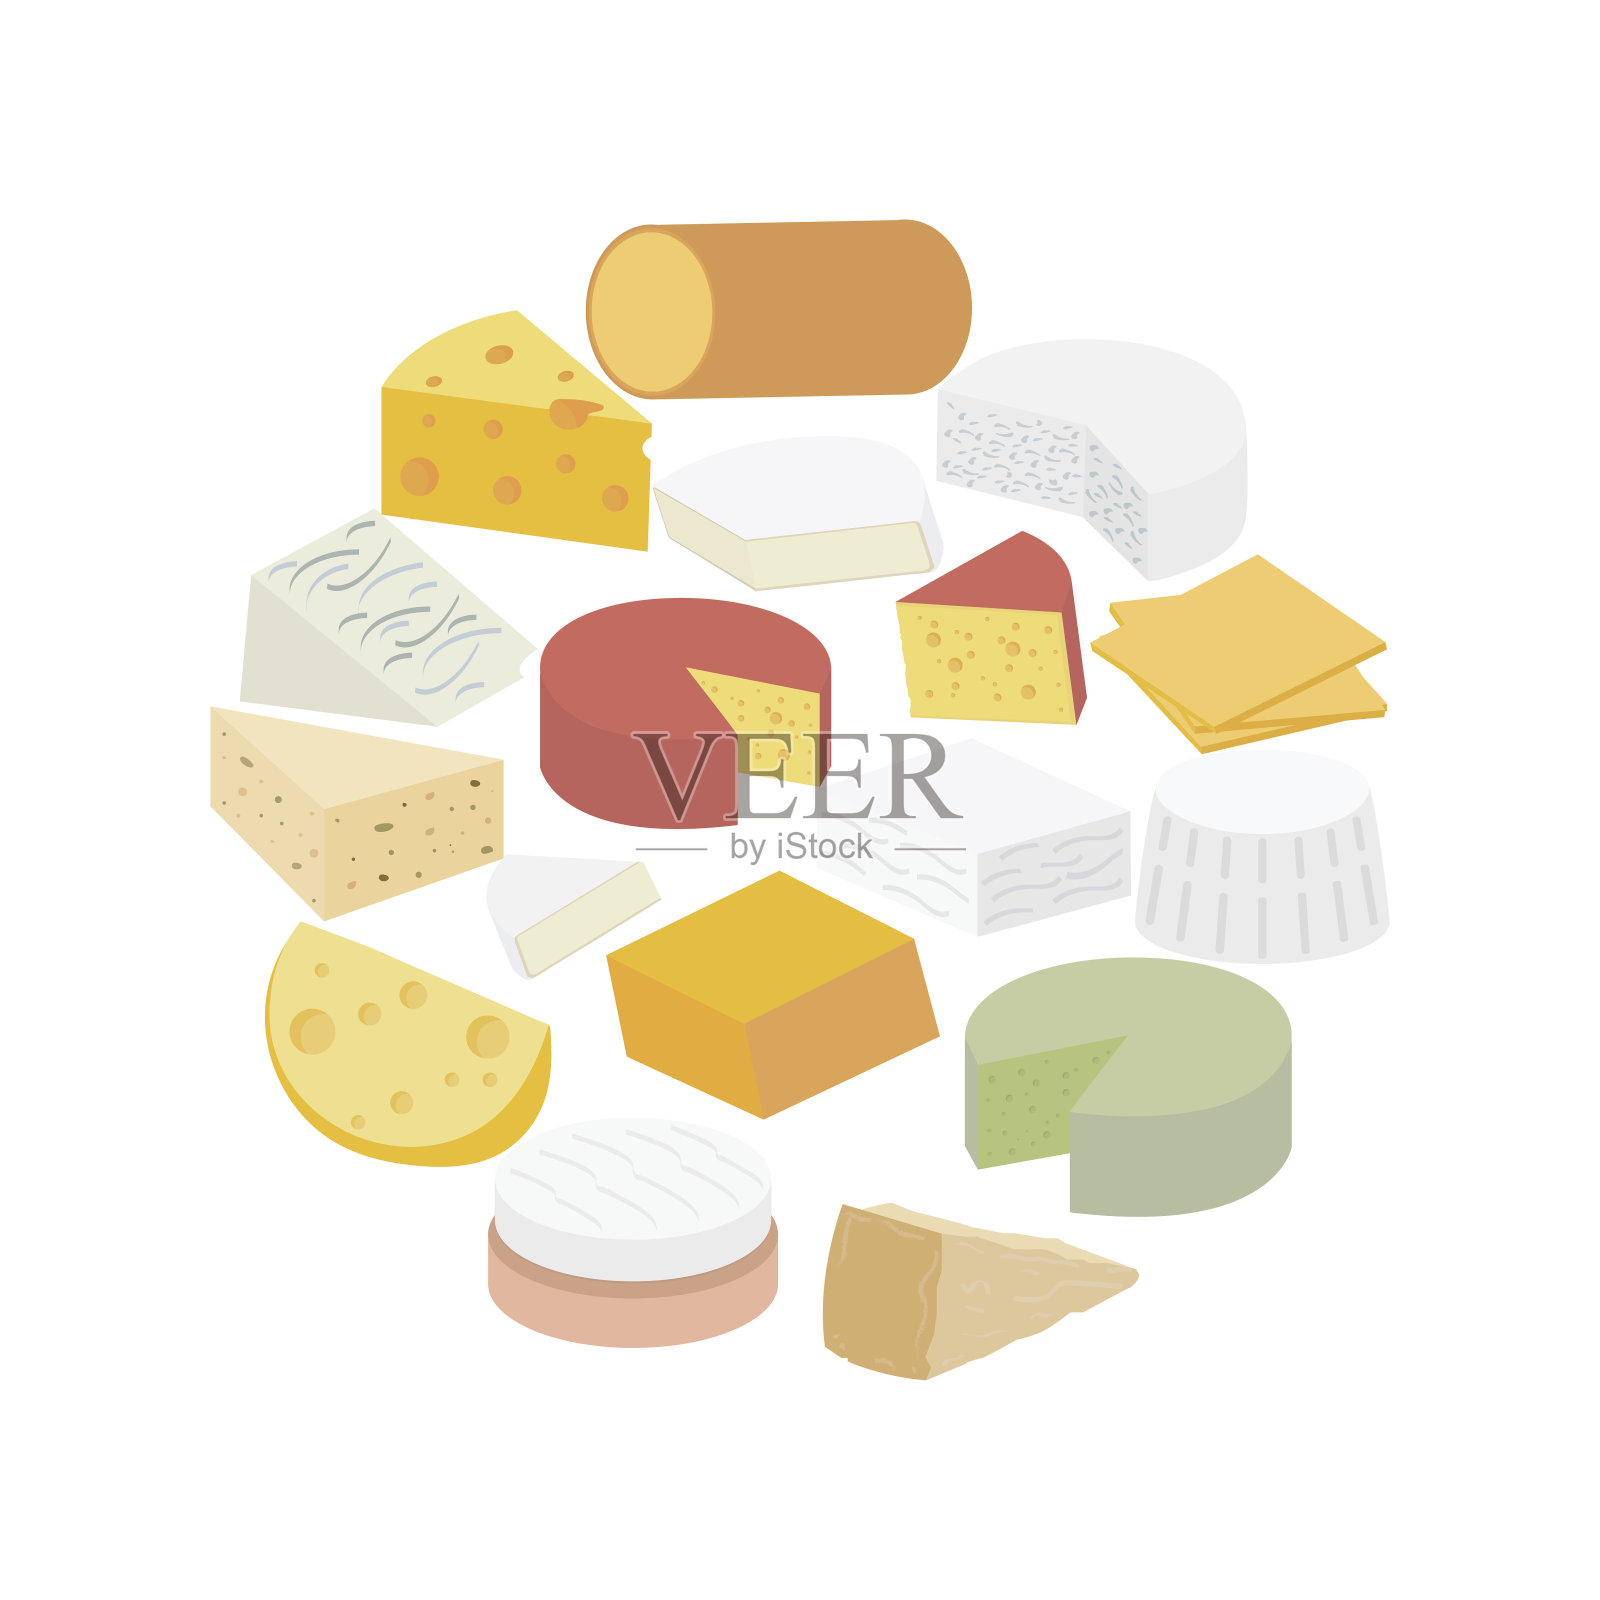 奶酪。布里干酪、蓝色干酪、羊乳干酪、卡门贝尔干酪、乳清干酪、羊乳酪、马斯丹干酪、烟熏、胡椒杰克干酪、切达干酪、美式干酪、帕尔马干酪、荷兰干酪、瑞士干酪设计元素图片